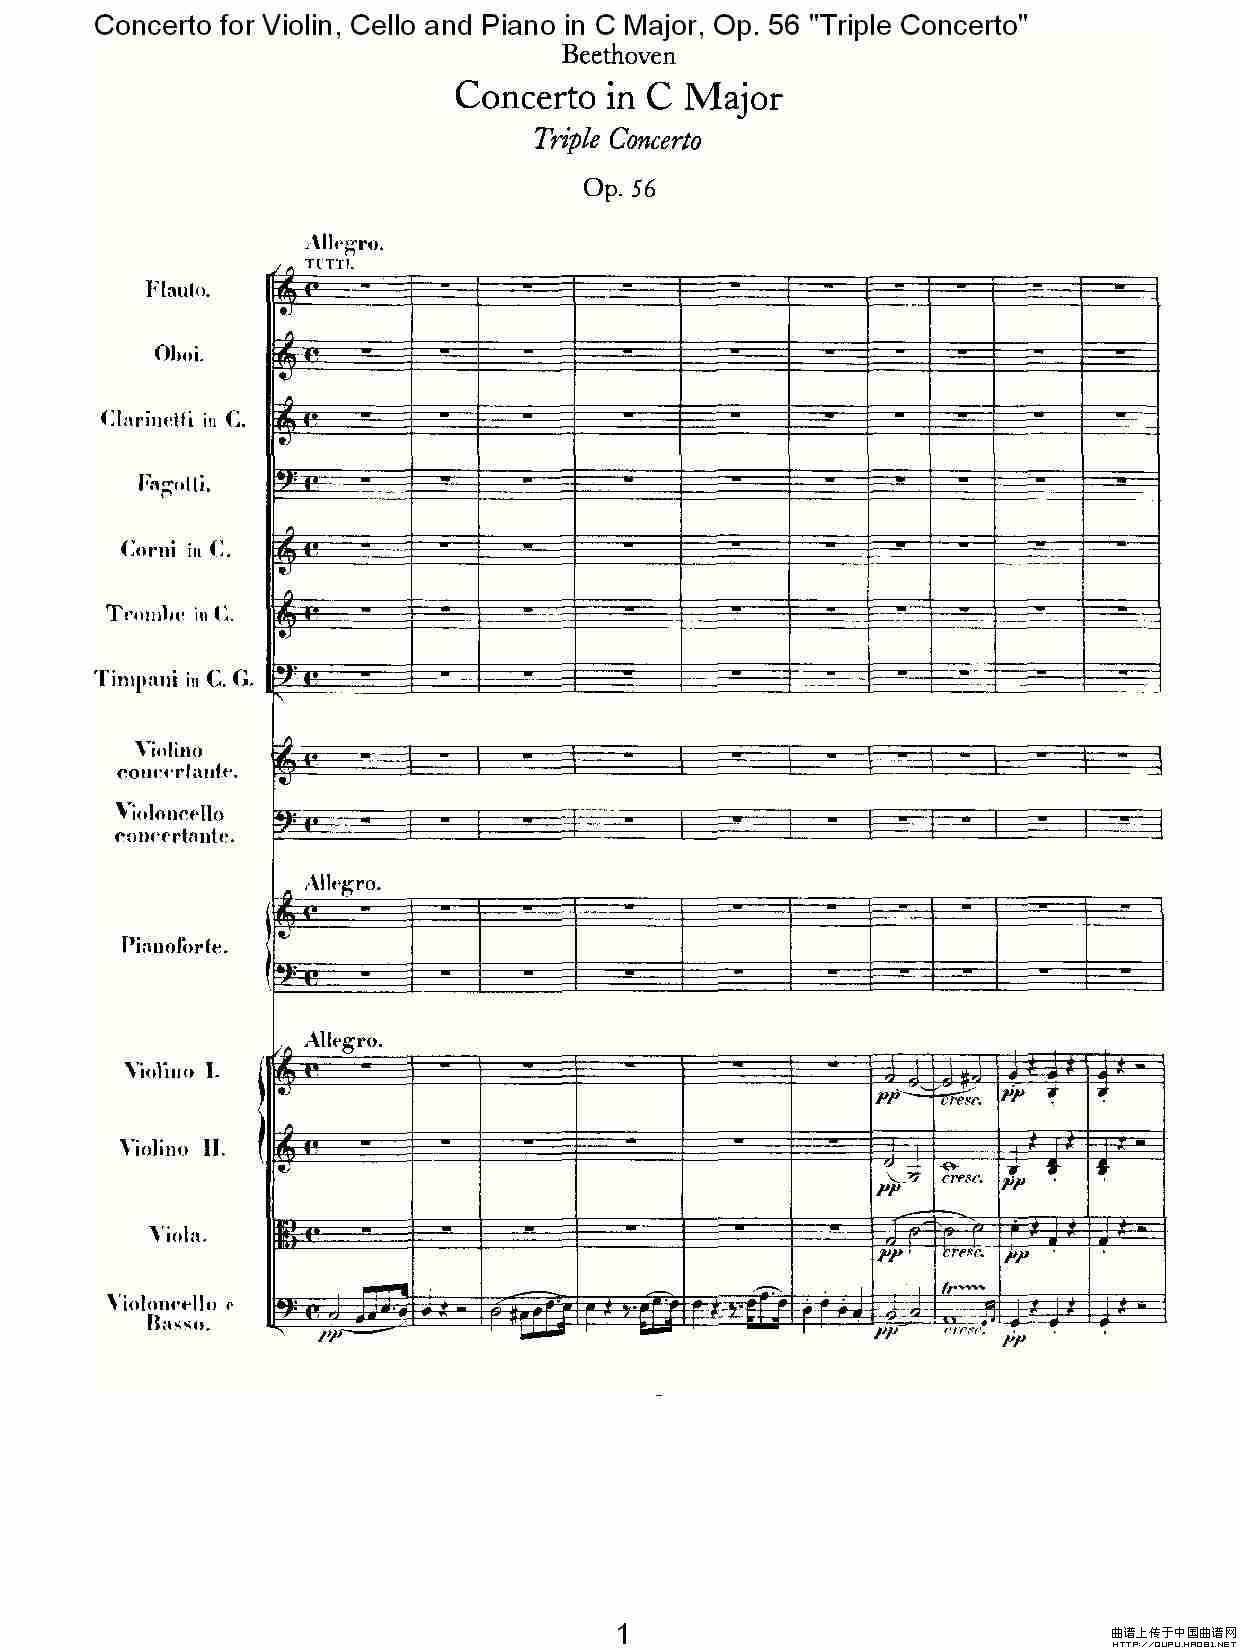 C大调大提琴与钢琴协奏曲 Op.56第一乐章（一）